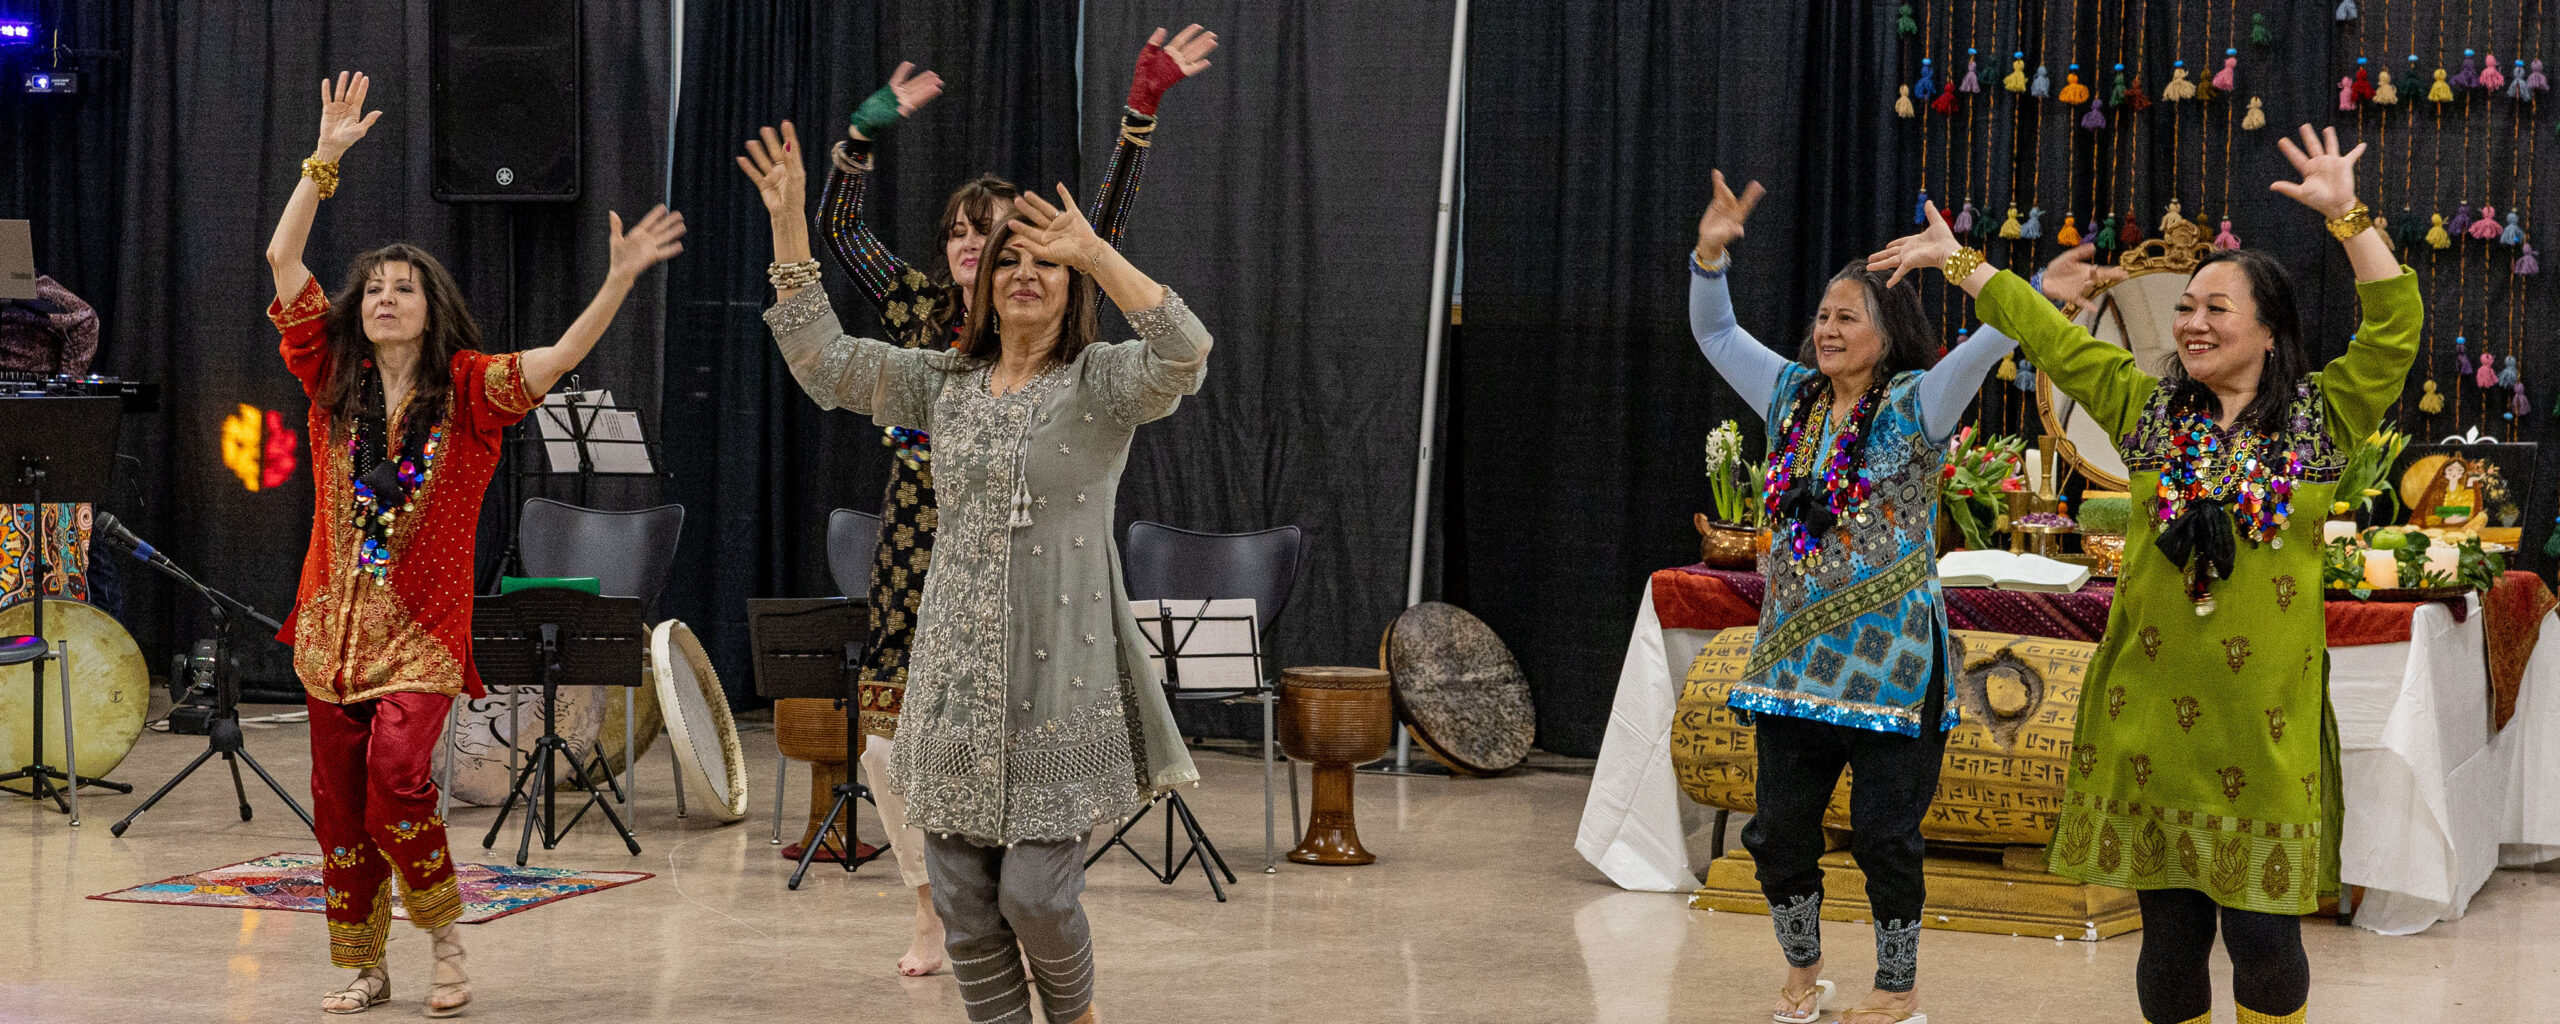 Nowruz Event dancers